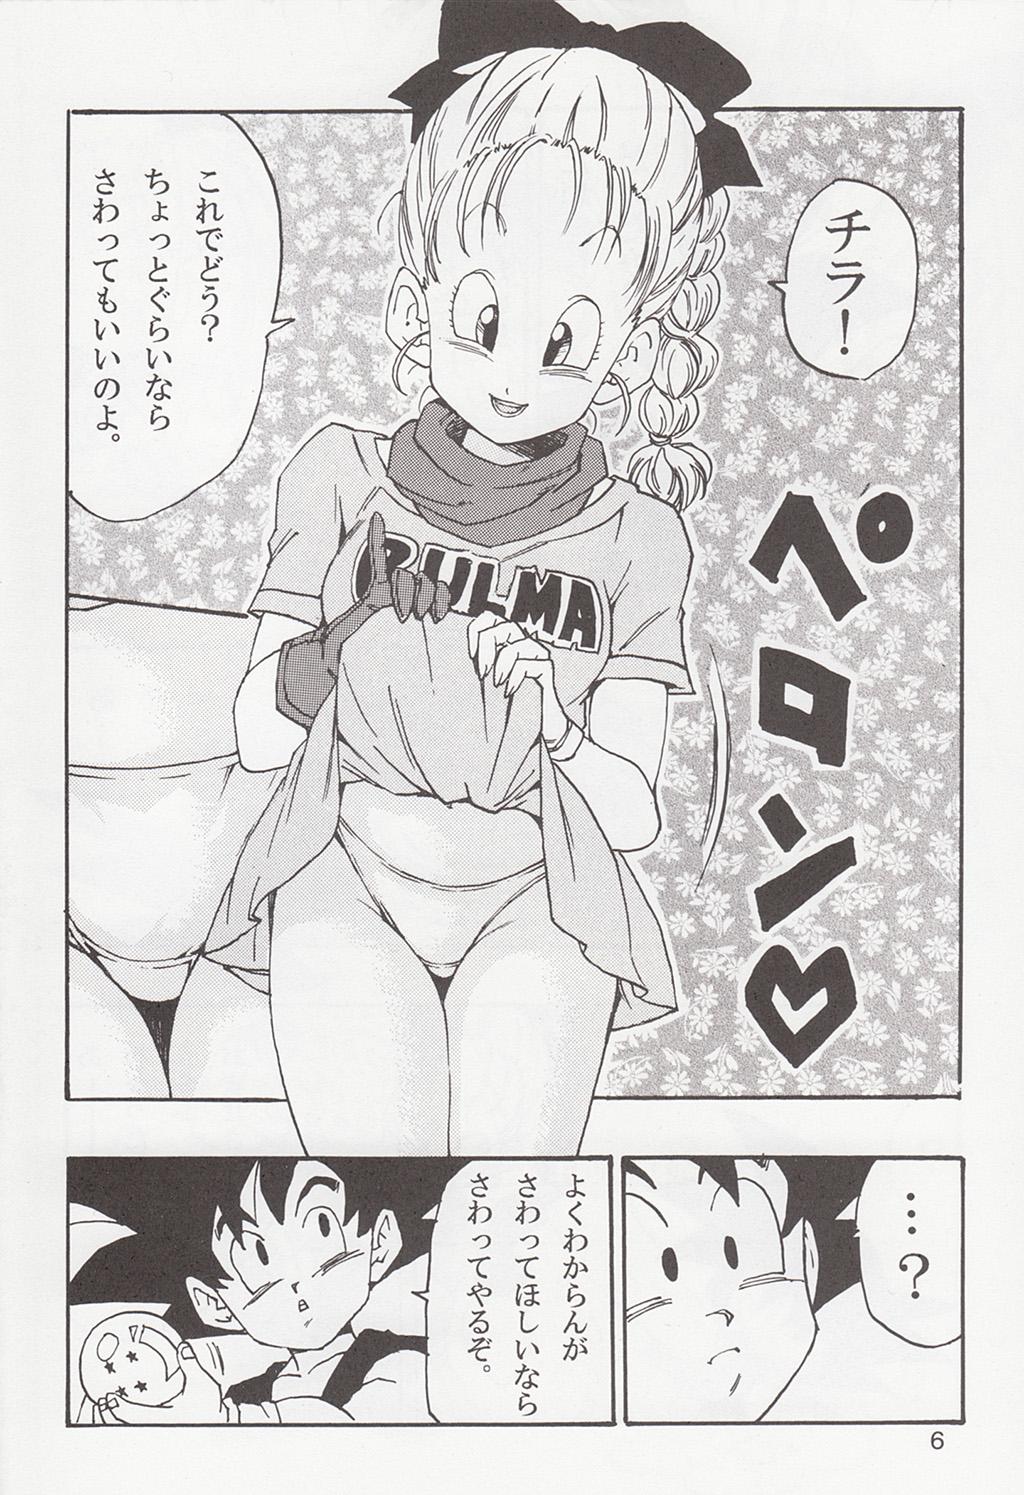 Perrito Dragon Ball EB 1 - Episode of Bulma - Dragon ball Exgirlfriend - Page 6